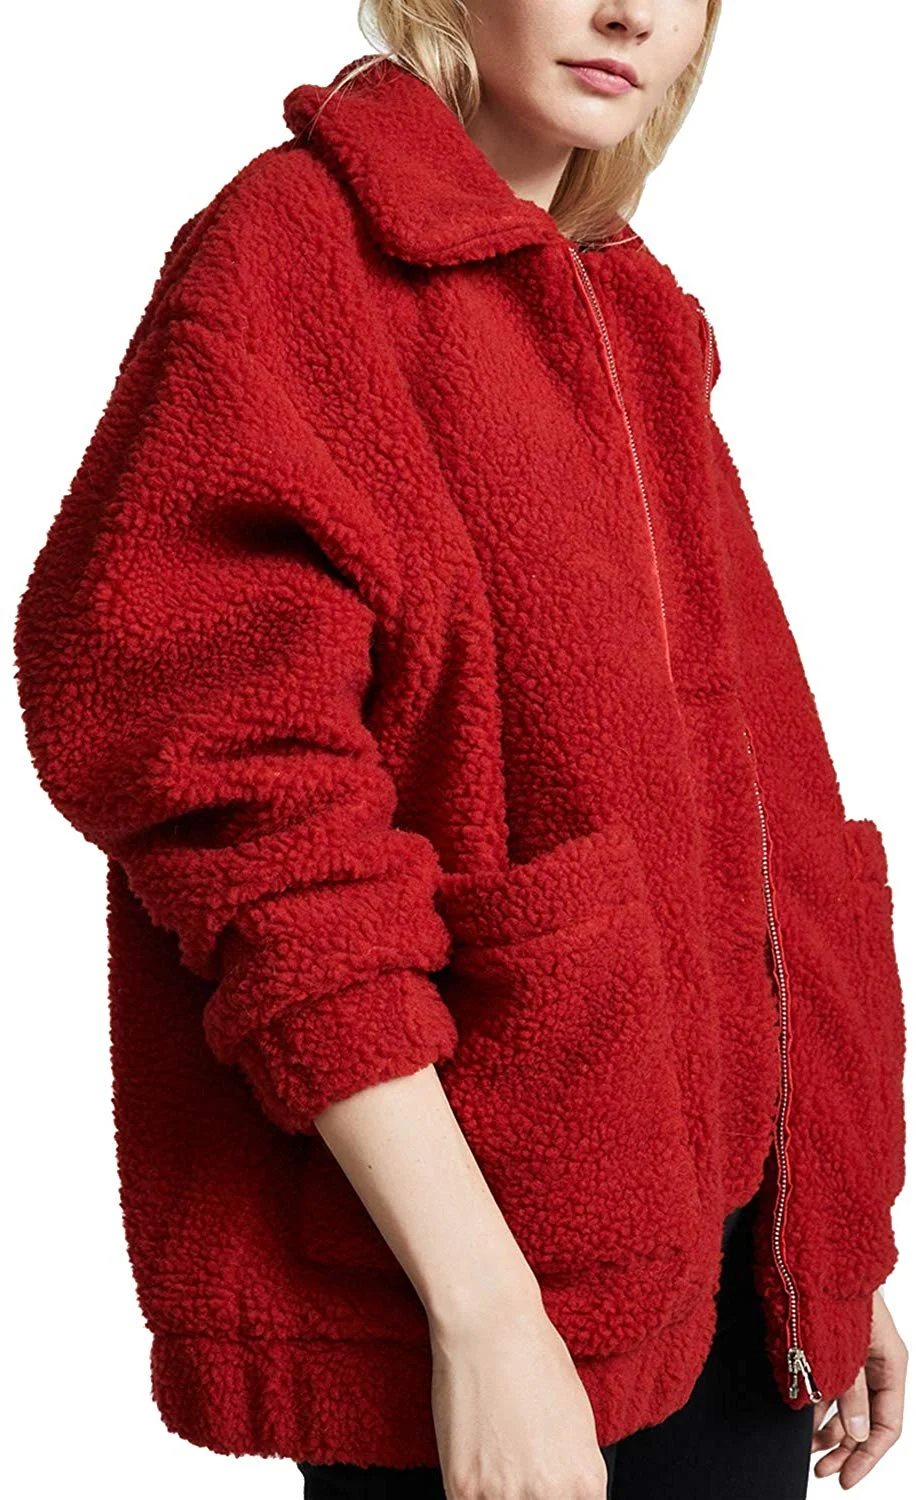 Women Coats Faux Wool Blend Warm Winter Jacket Zip Up Long Sleeve Oversized Fashion Outerwear